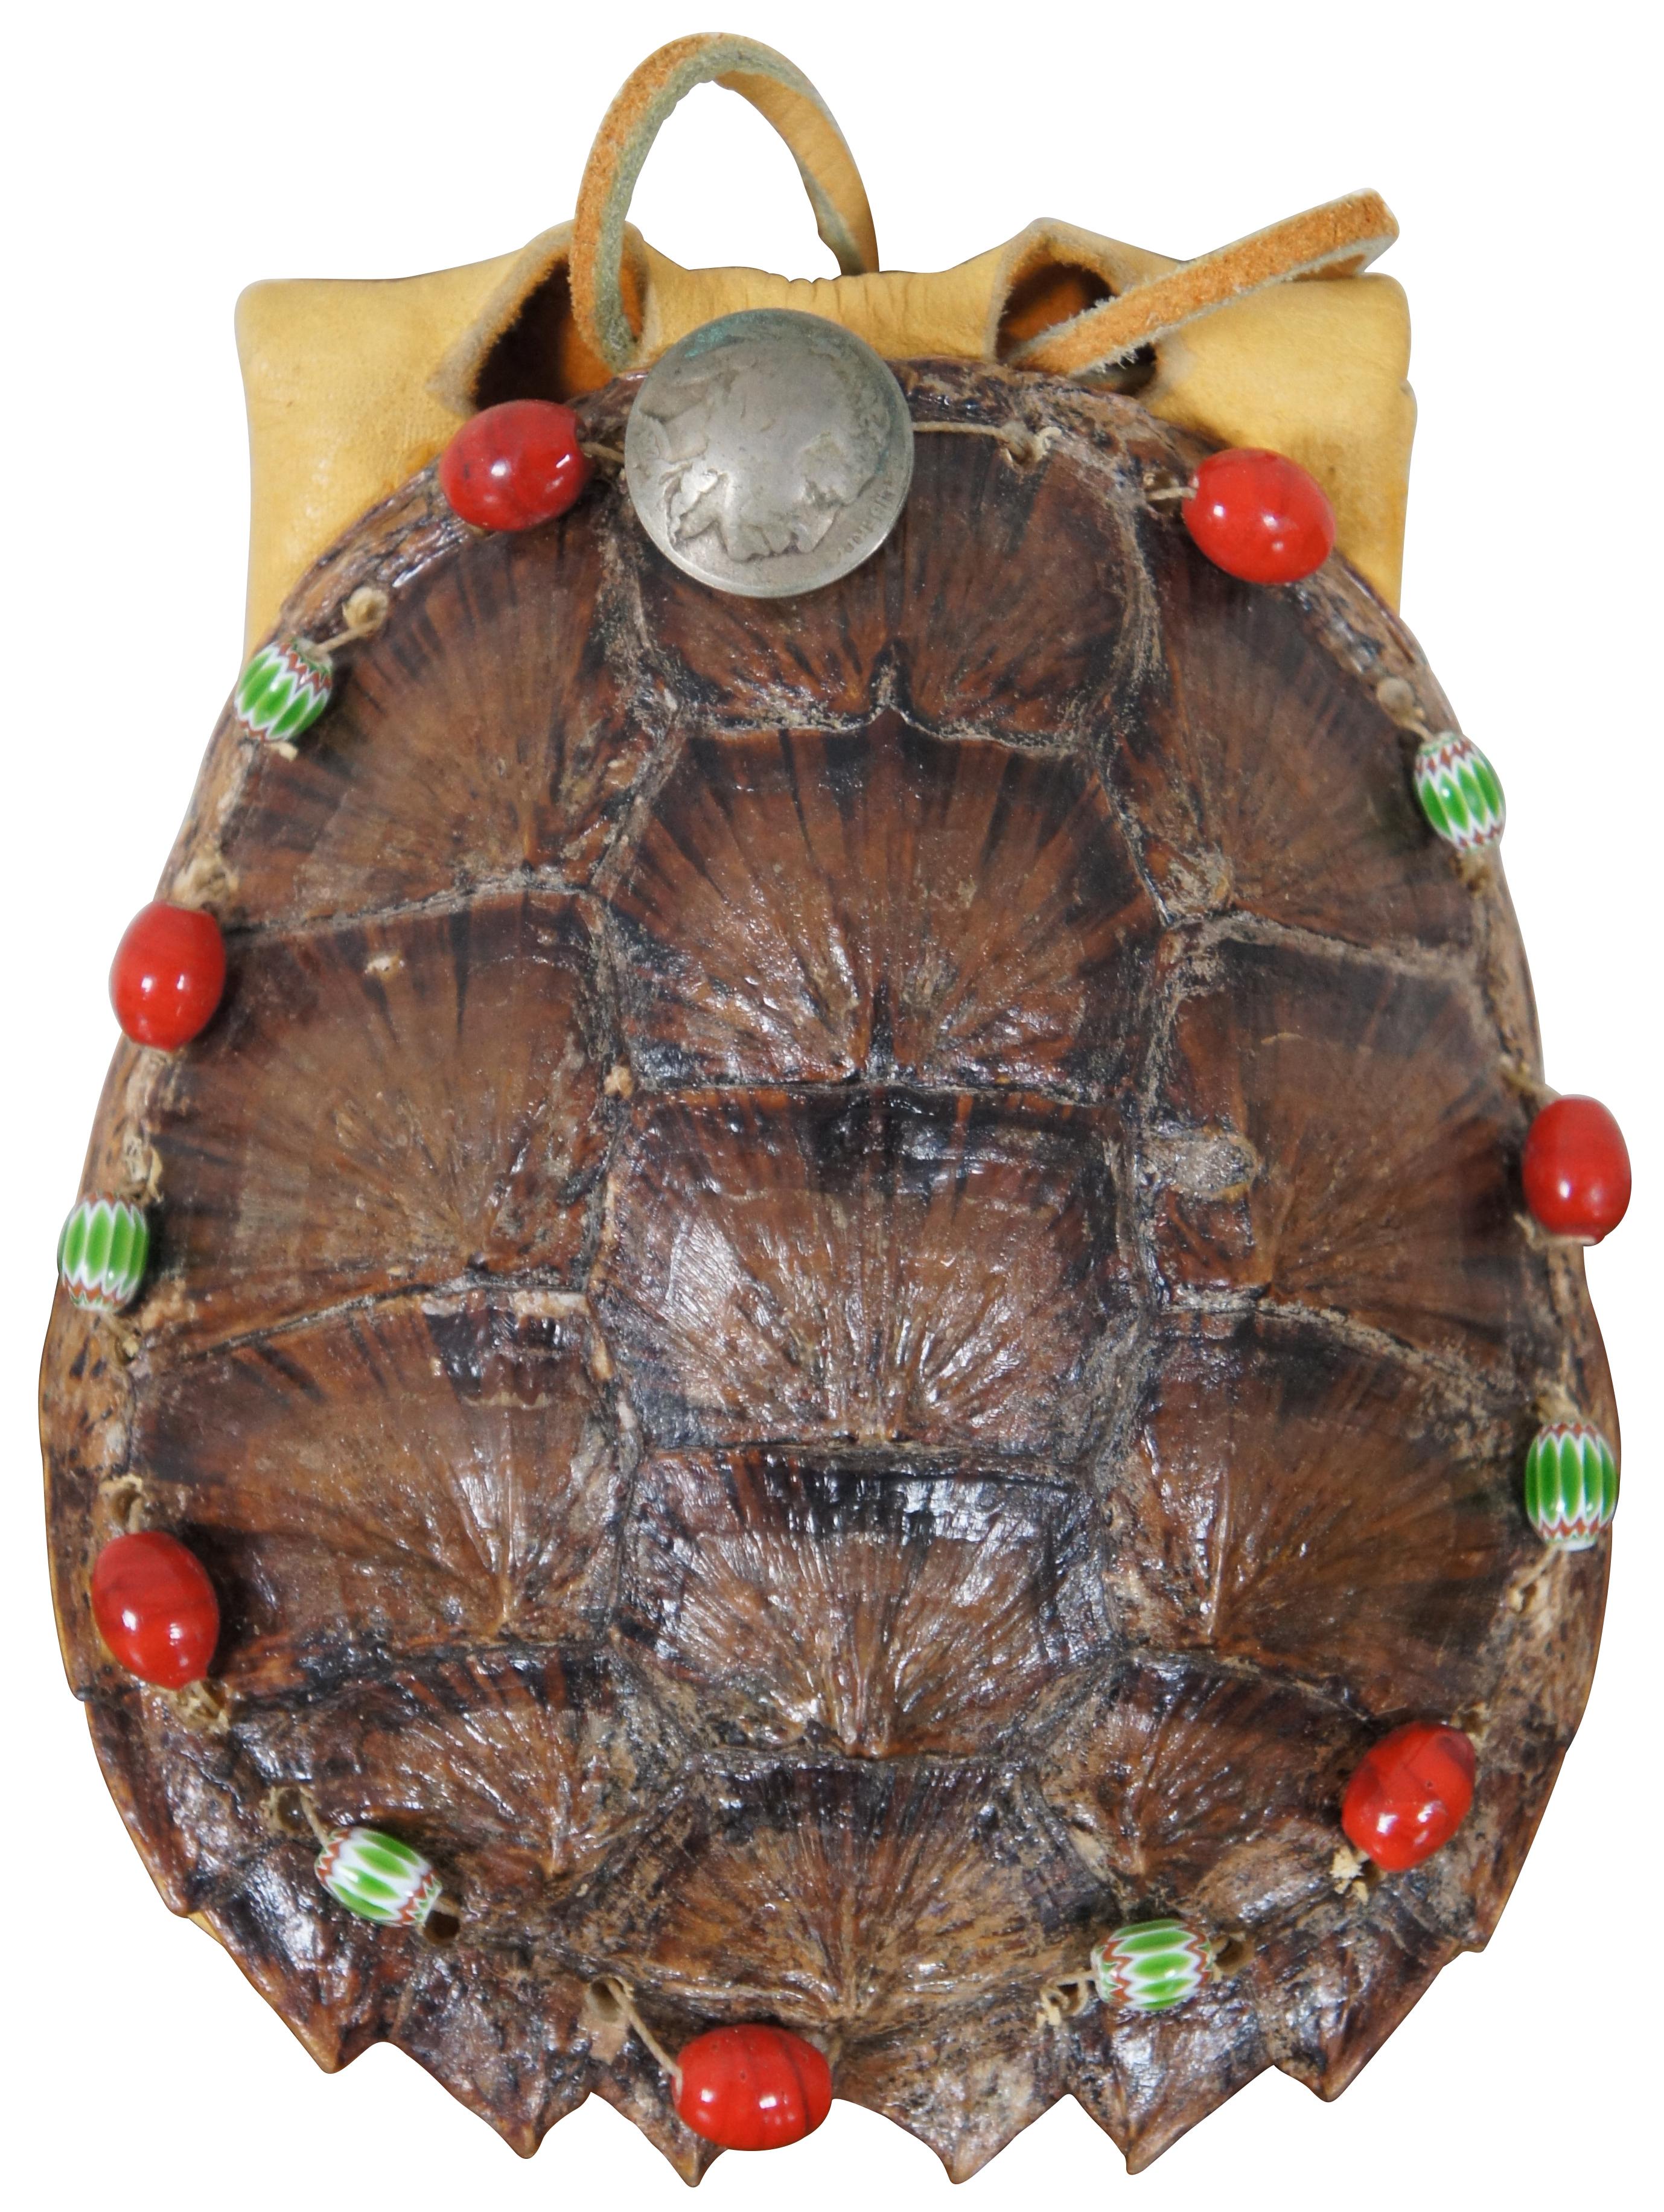 Vintage Native American Style Medizin Tasche oder Beutel aus dem Panzer einer Box Schildkröte und Wildleder, dekoriert um den Rand mit roten und grünen Perlen und Knöpfe aus 